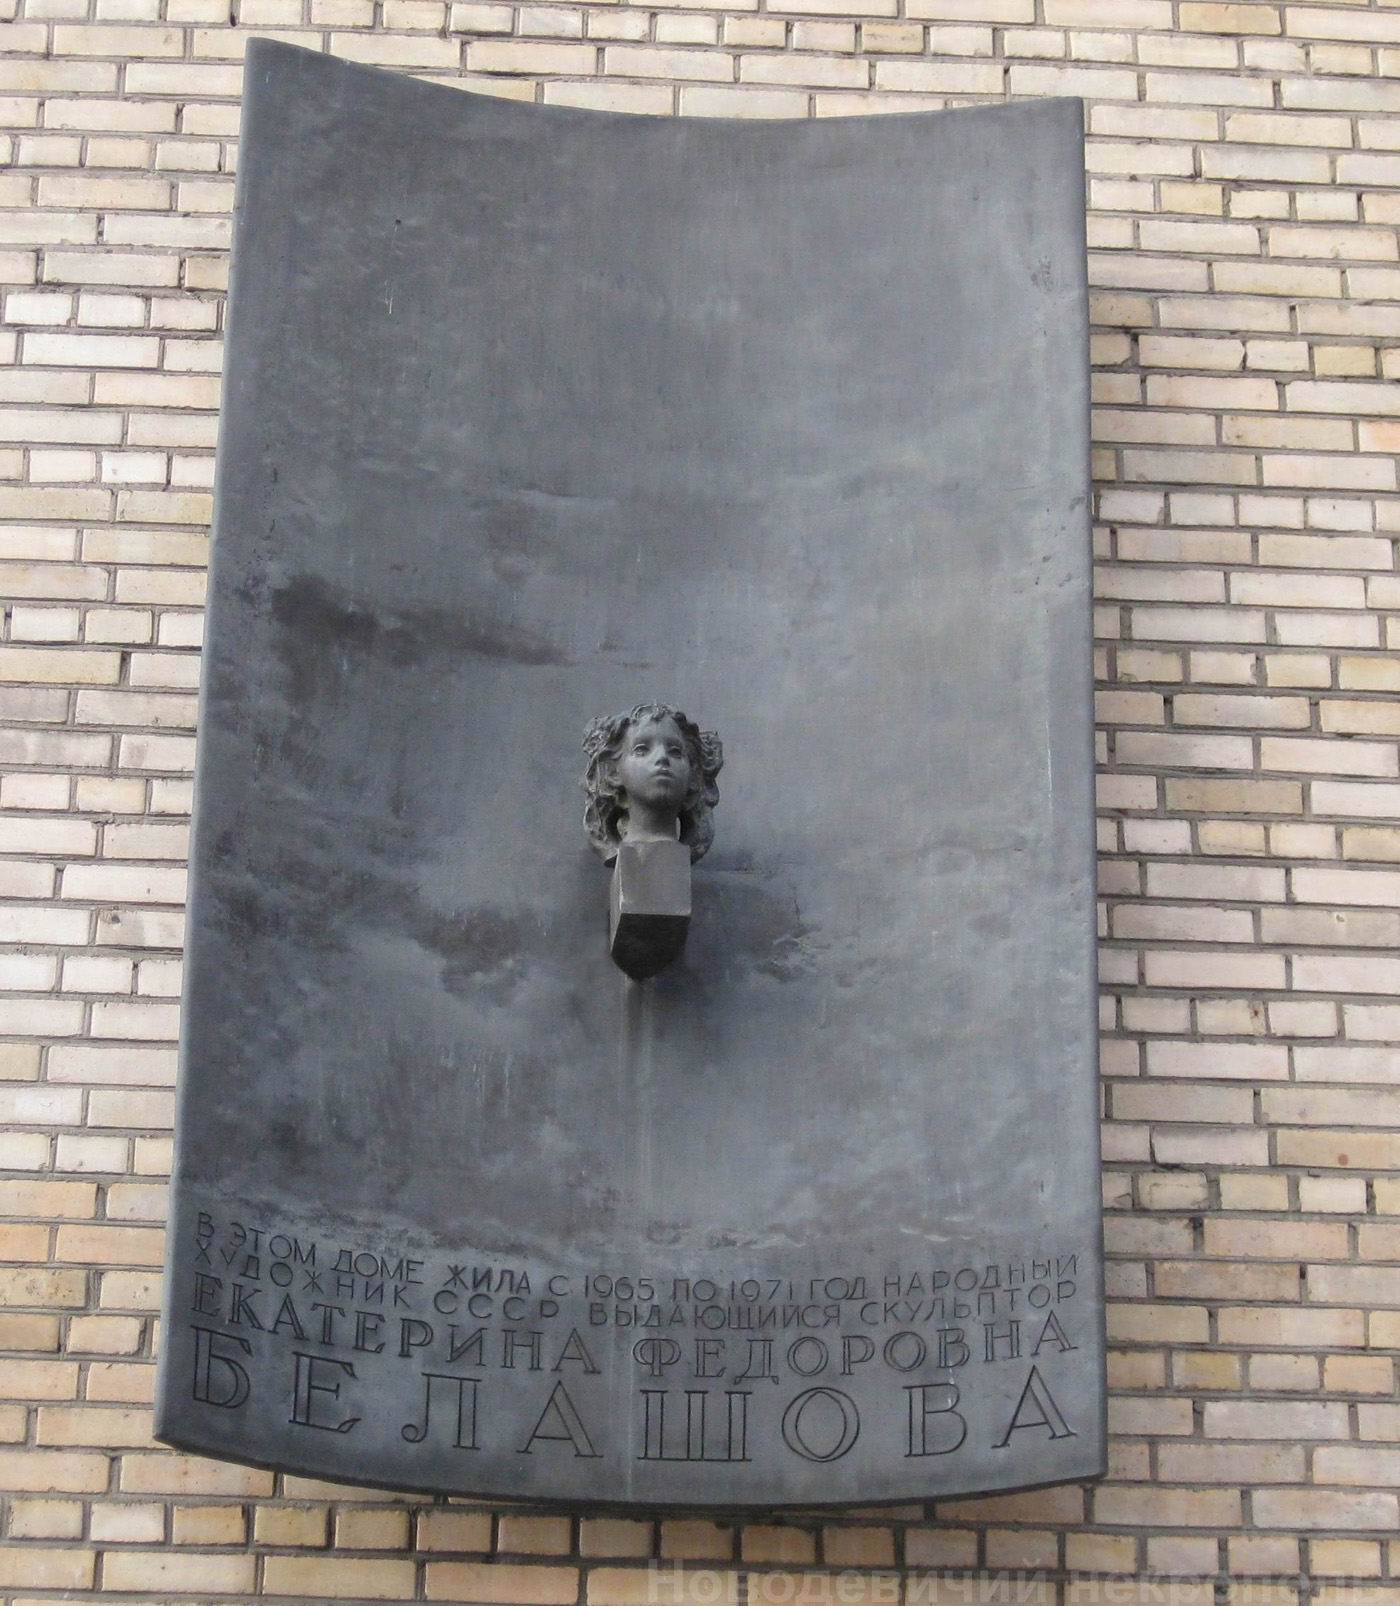 Мемориальная доска Белашовой Е.Ф. (1906–1971), ск. А.Белашов, арх. В.Воскресенский, на Петровско-Разумовской аллее, дом 8, открыта в 1974.